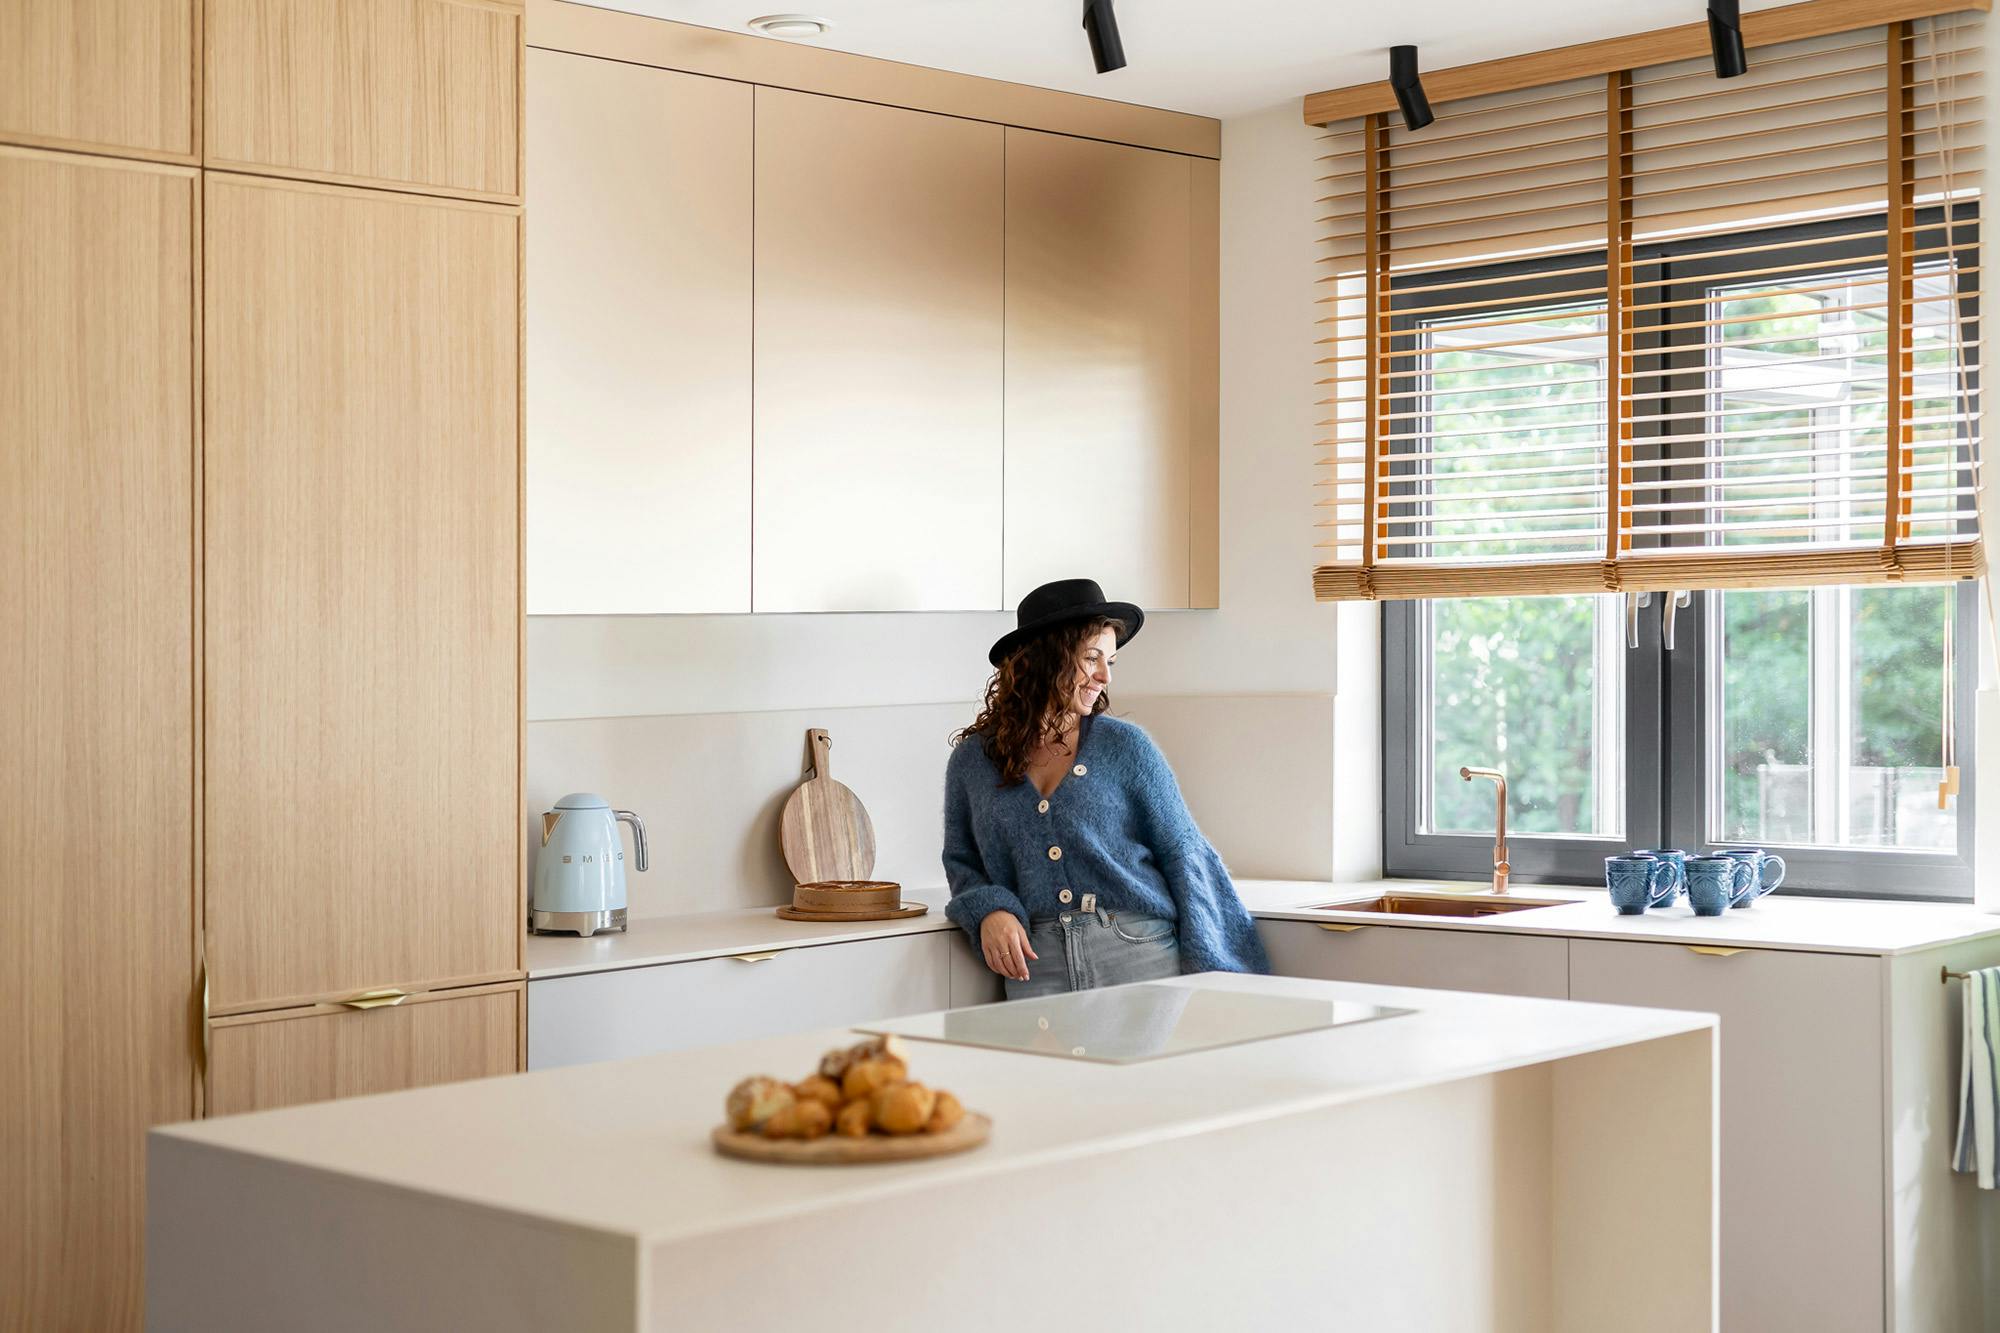 Bildnummer 39 des aktuellen Abschnitts von Architect Pils Ferrer chooses DKTN for the renovation of her home, where the kitchen speaks for itself von Cosentino Deutschland